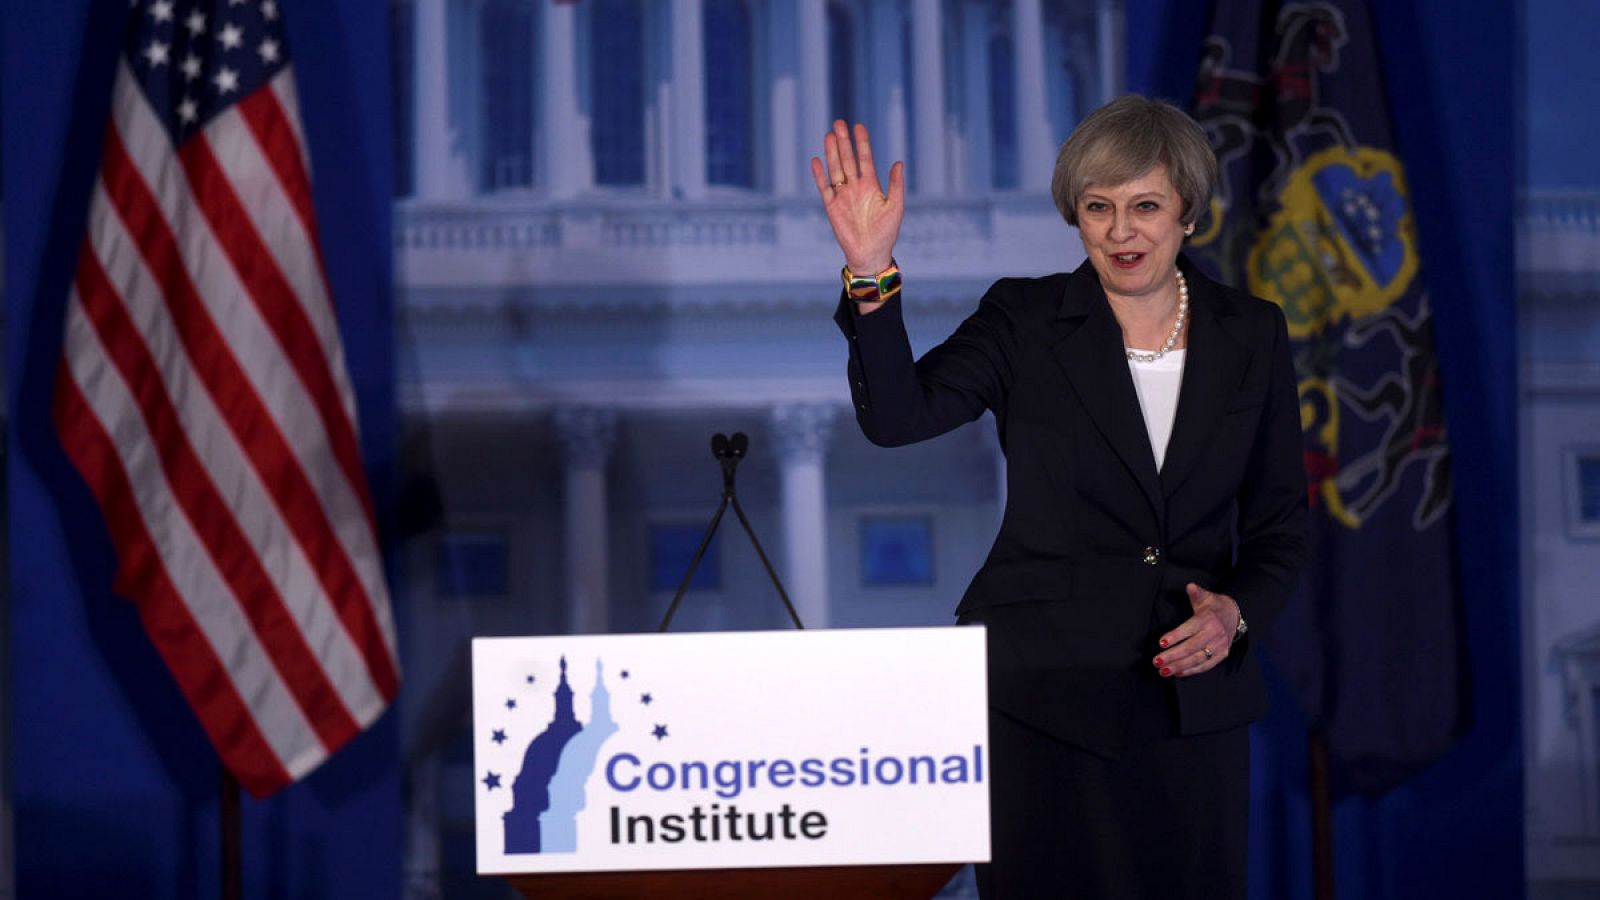 La primera ministra británica, Theresa May, durante su discurso en la Conferencia Conjunta de Asuntos Republicanos en Filadelfia (EE.UU.) el 26 de enero de 2017.